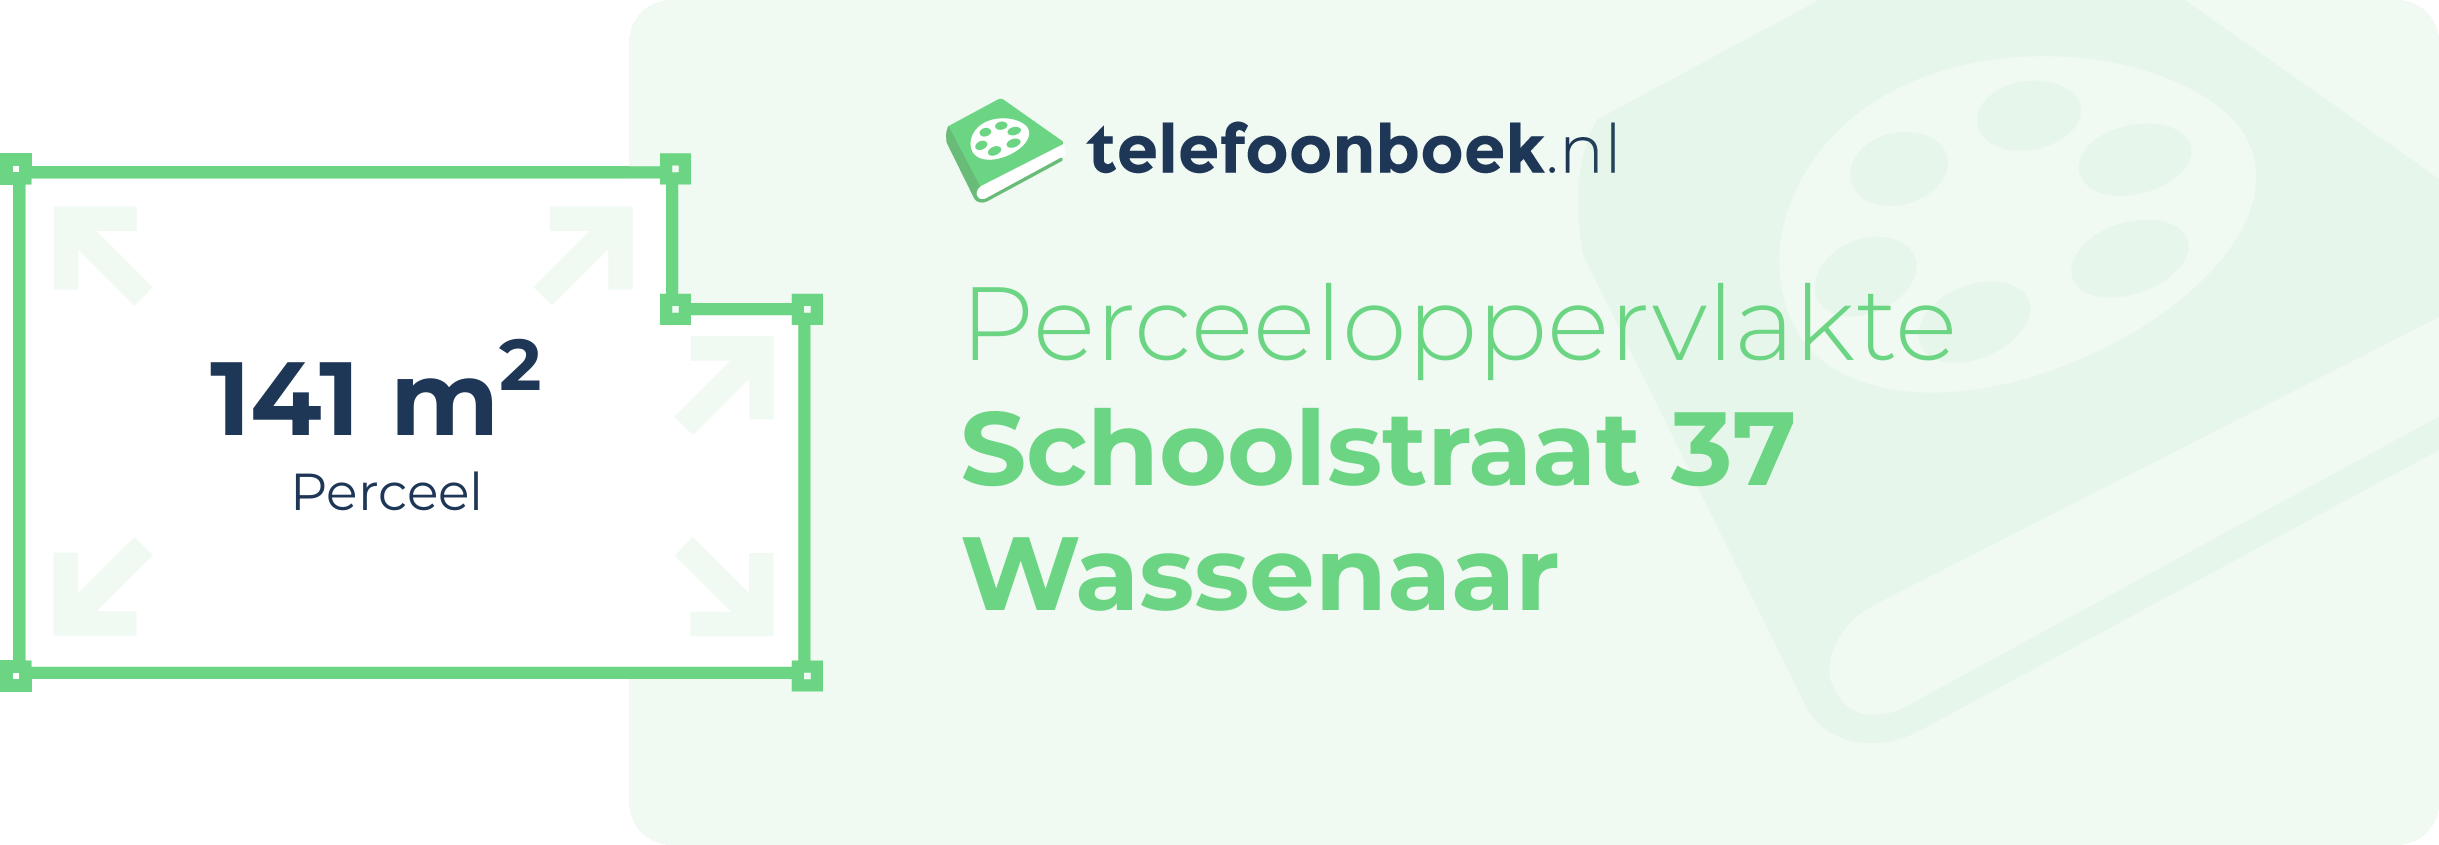 Perceeloppervlakte Schoolstraat 37 Wassenaar